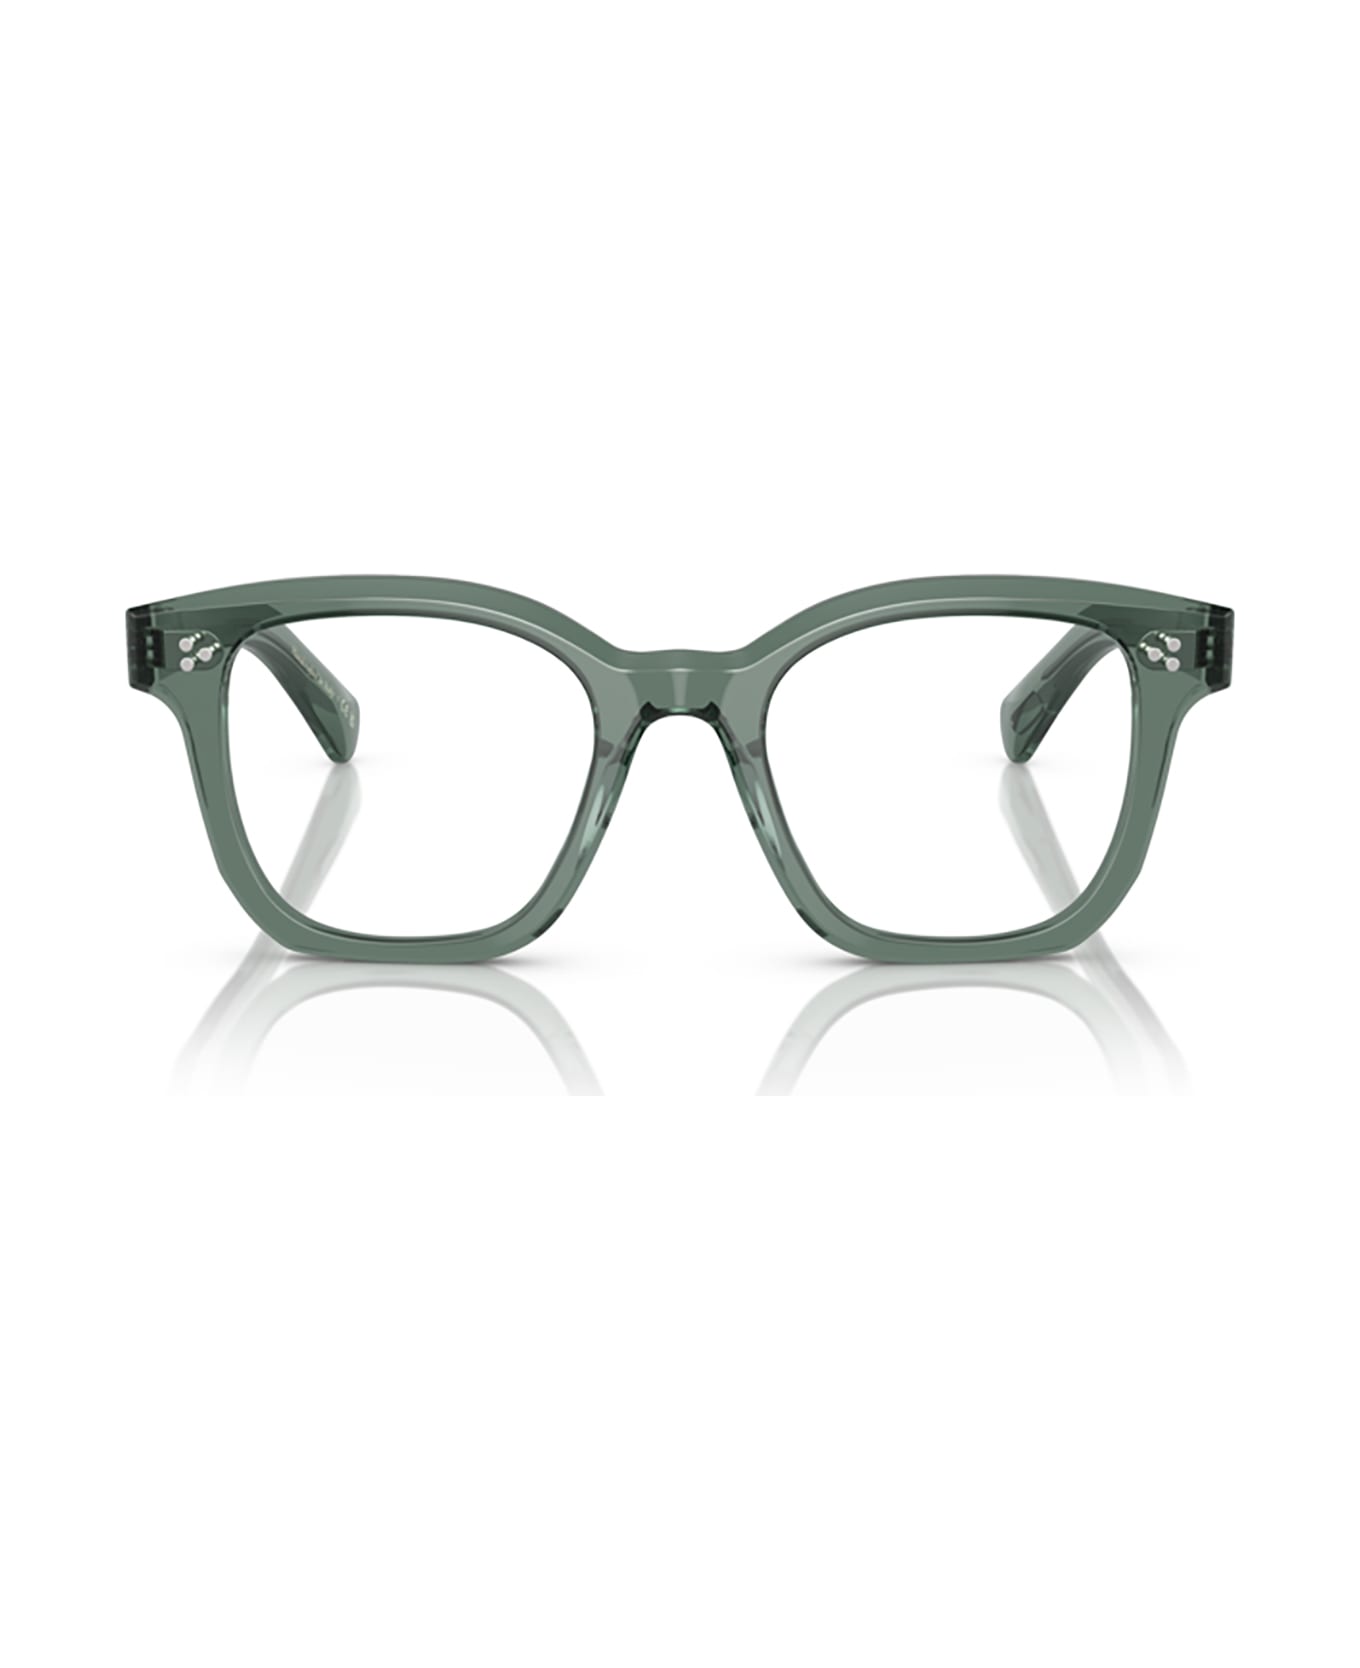 Oliver Peoples Ov5525u Ivy Glasses - Ivy アイウェア